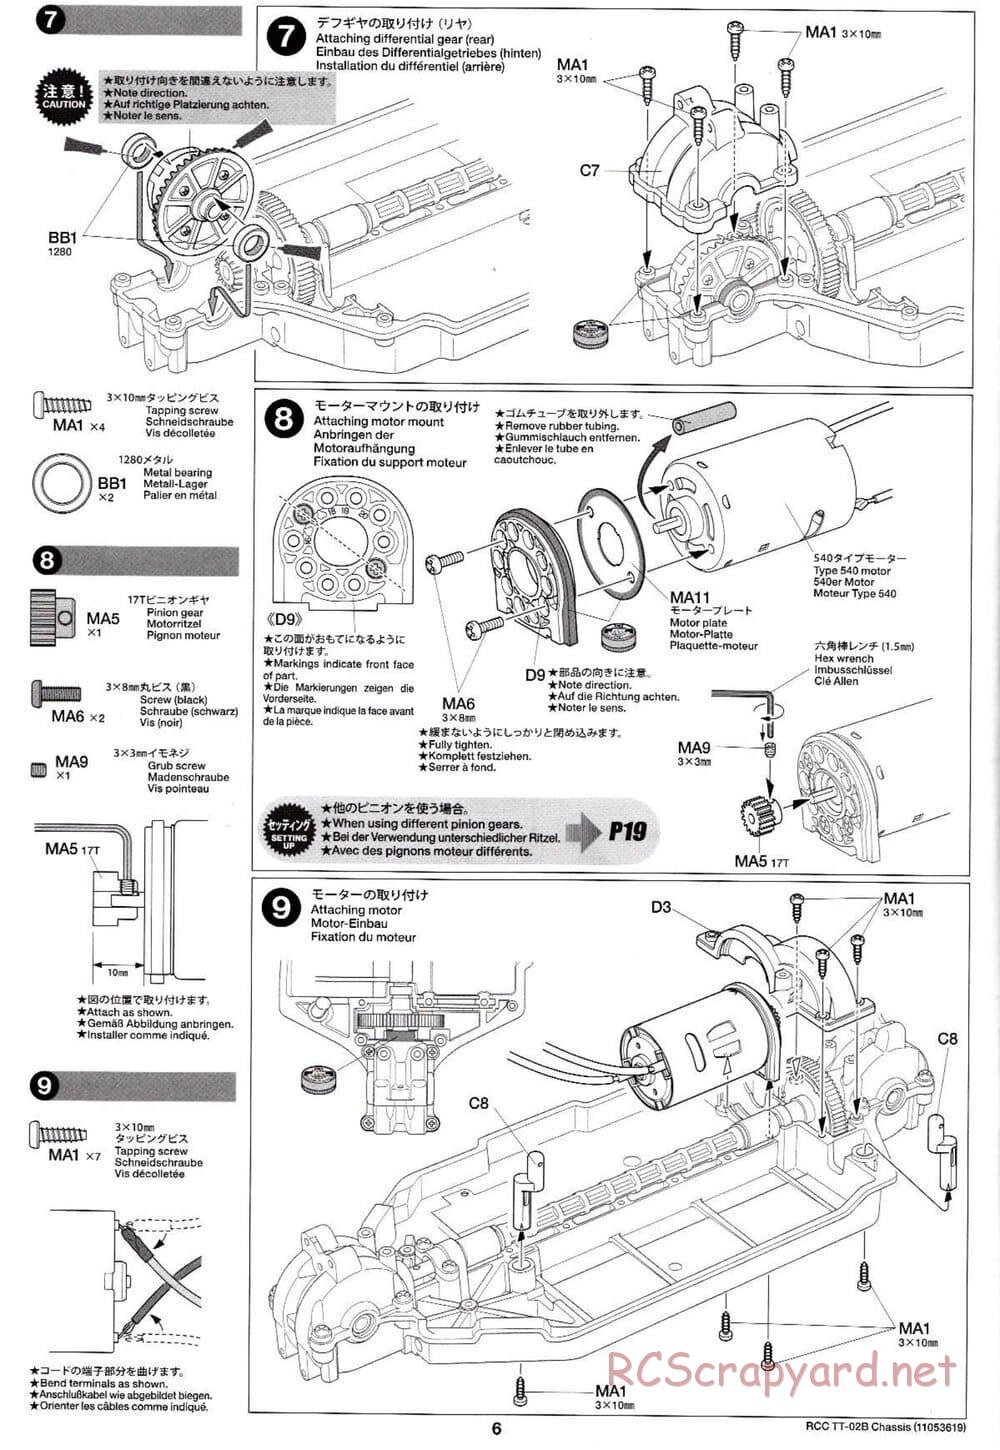 Tamiya - TT-02B Chassis - Manual - Page 10